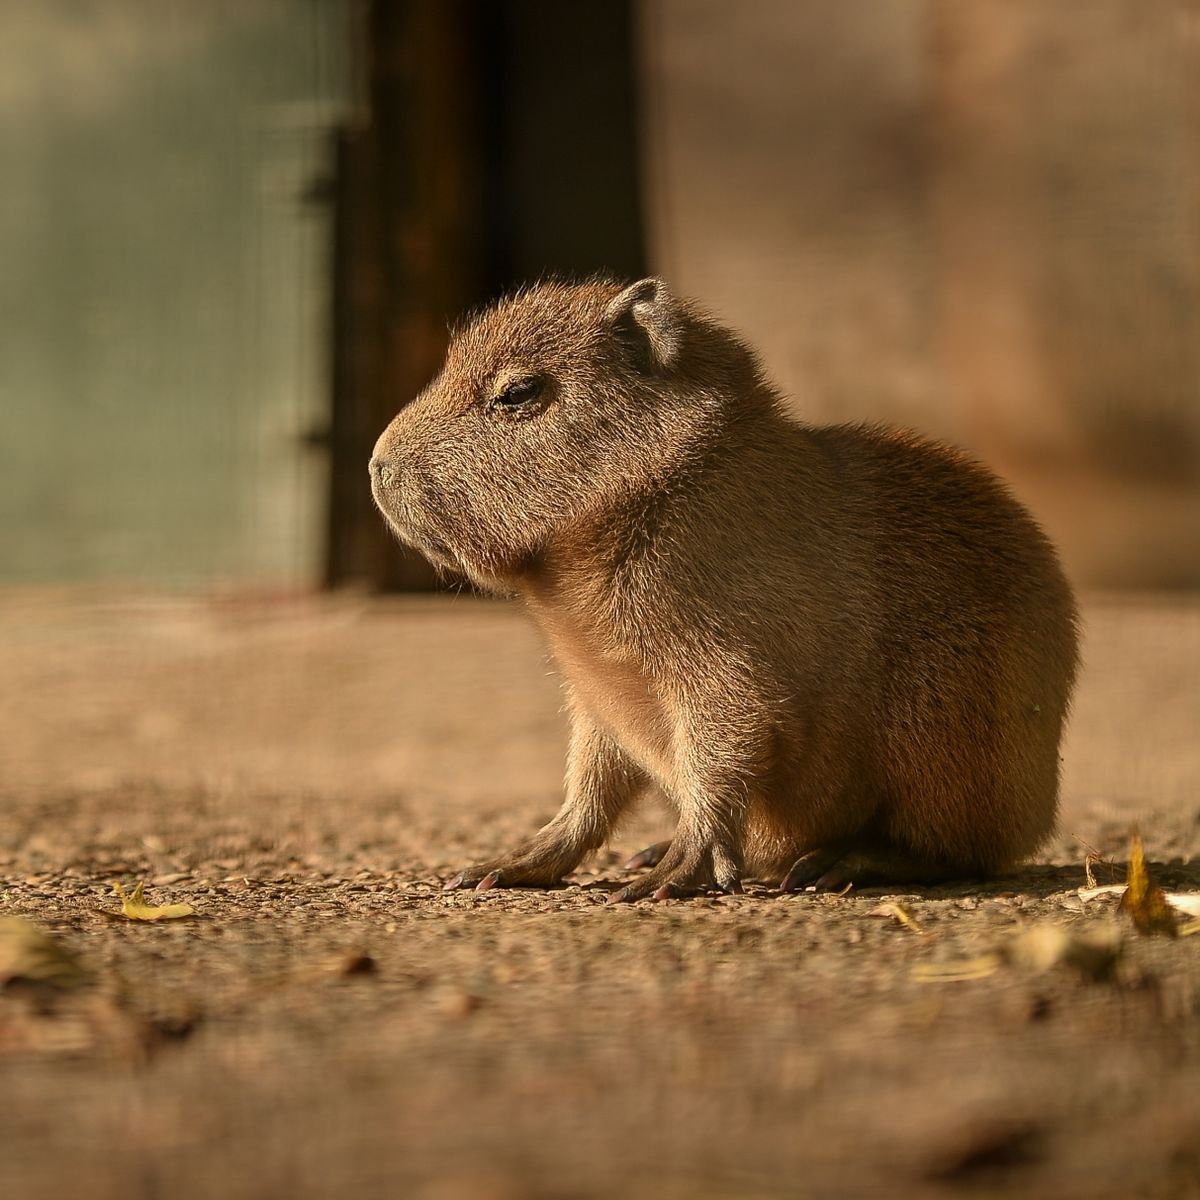 Meet the Adorable Capybara Teddy at Chester Zoo